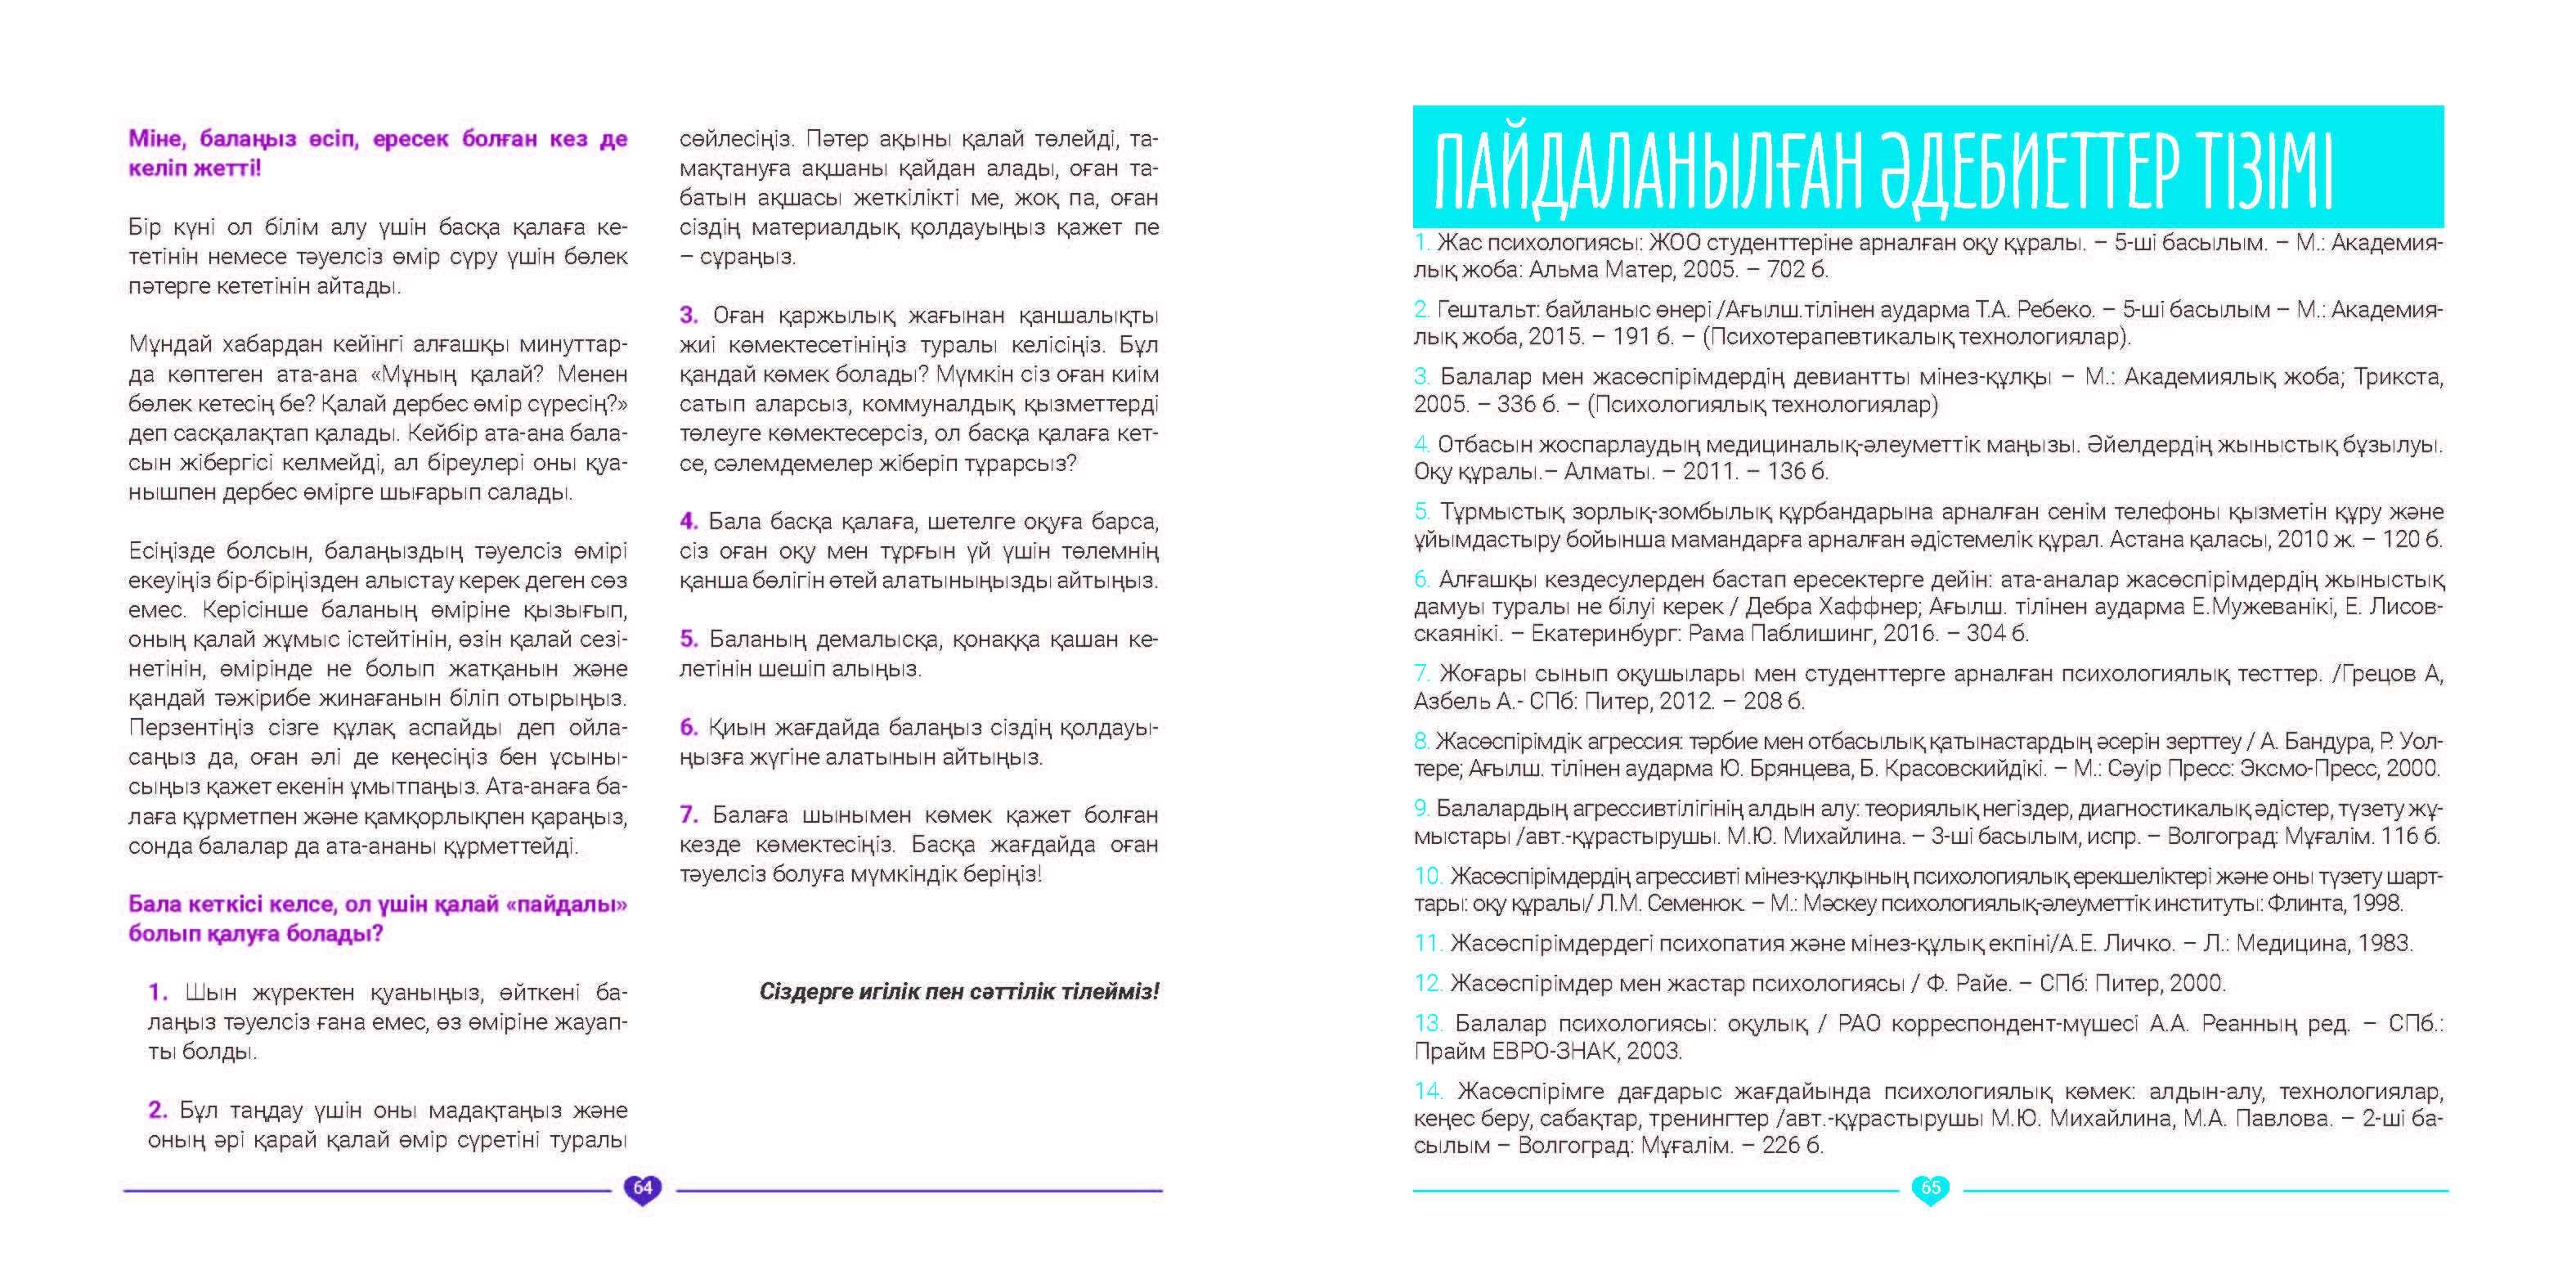 EVAC brochure KAZ (33).jpg